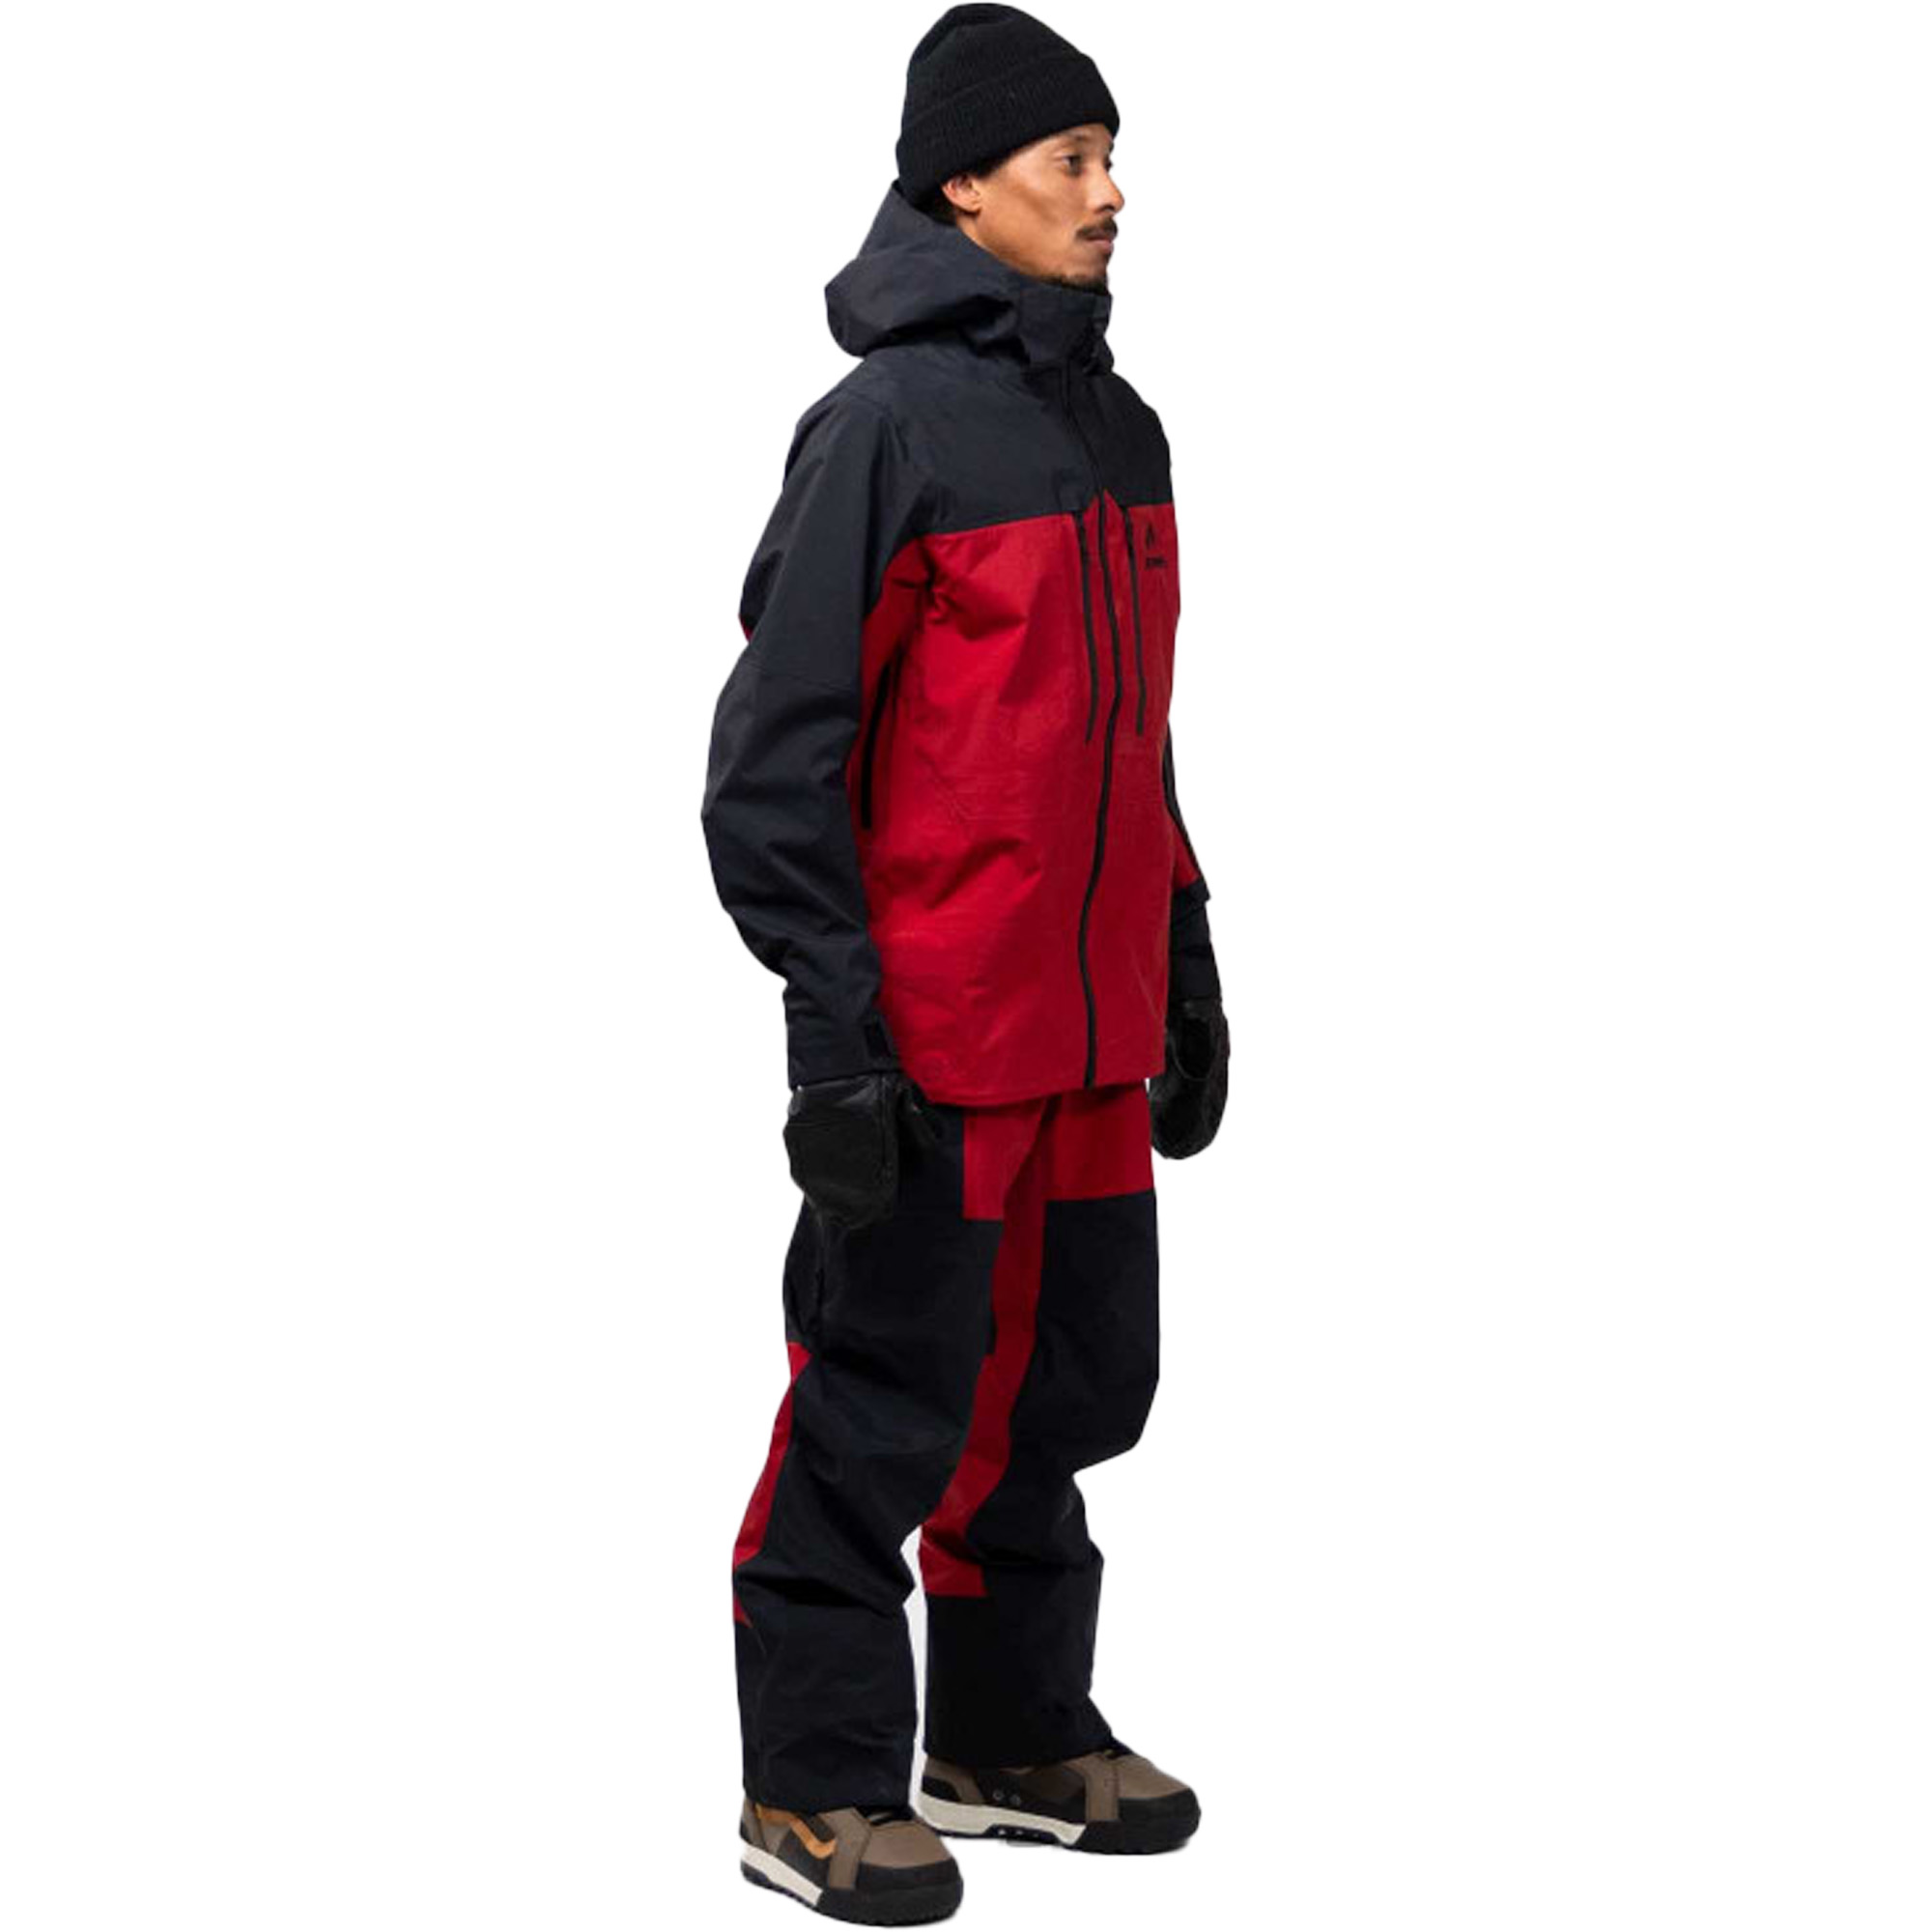 Jones Shralpinist 3L Snowboard/Ski Jacket